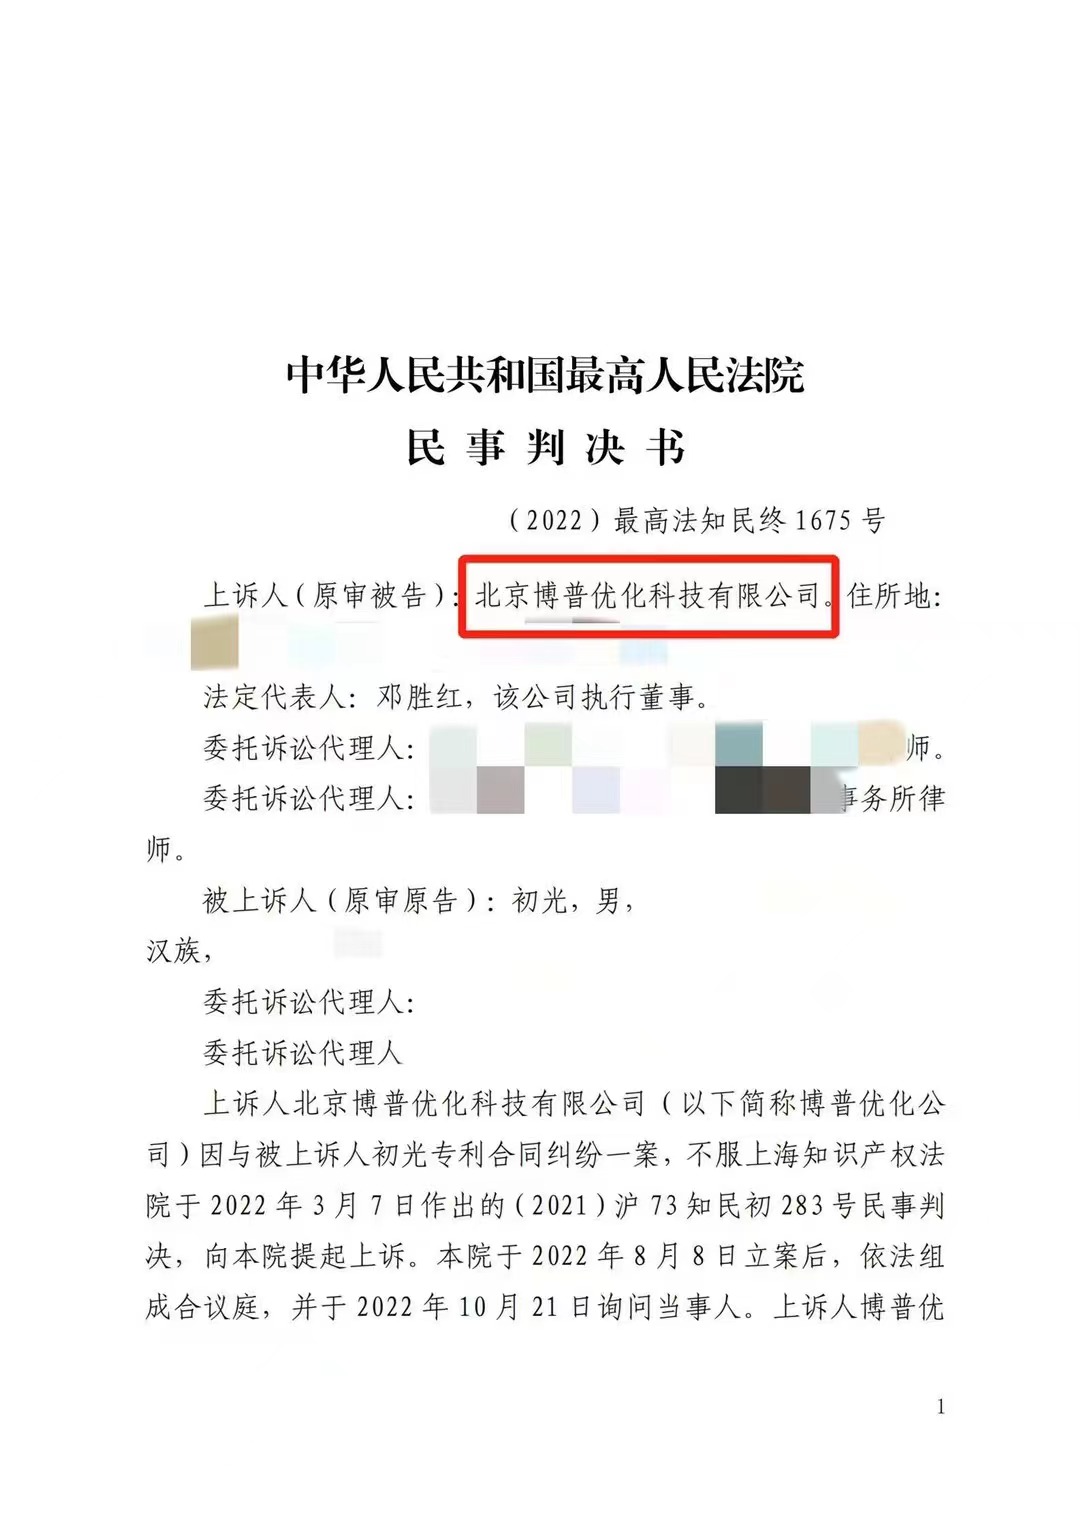 上海严正声明：最高法审判北京博普侵权赔偿400余万元